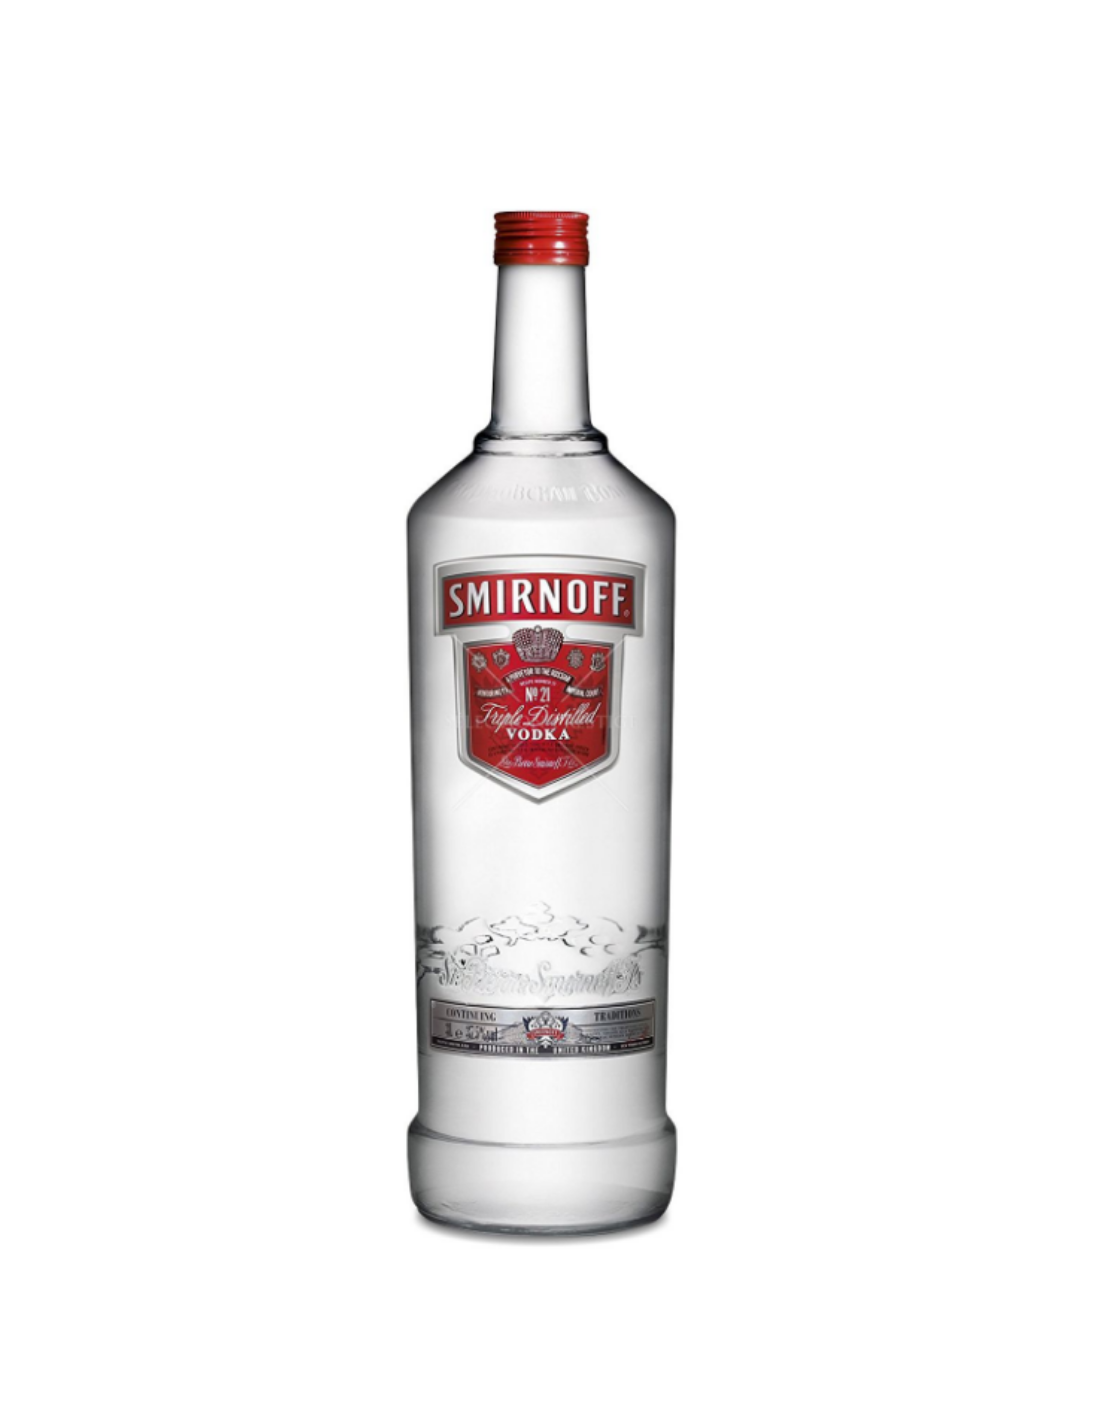 Vodca Smirnoff Red Label No. 2, 3L, 40% alc., Rusia alcooldiscount.ro